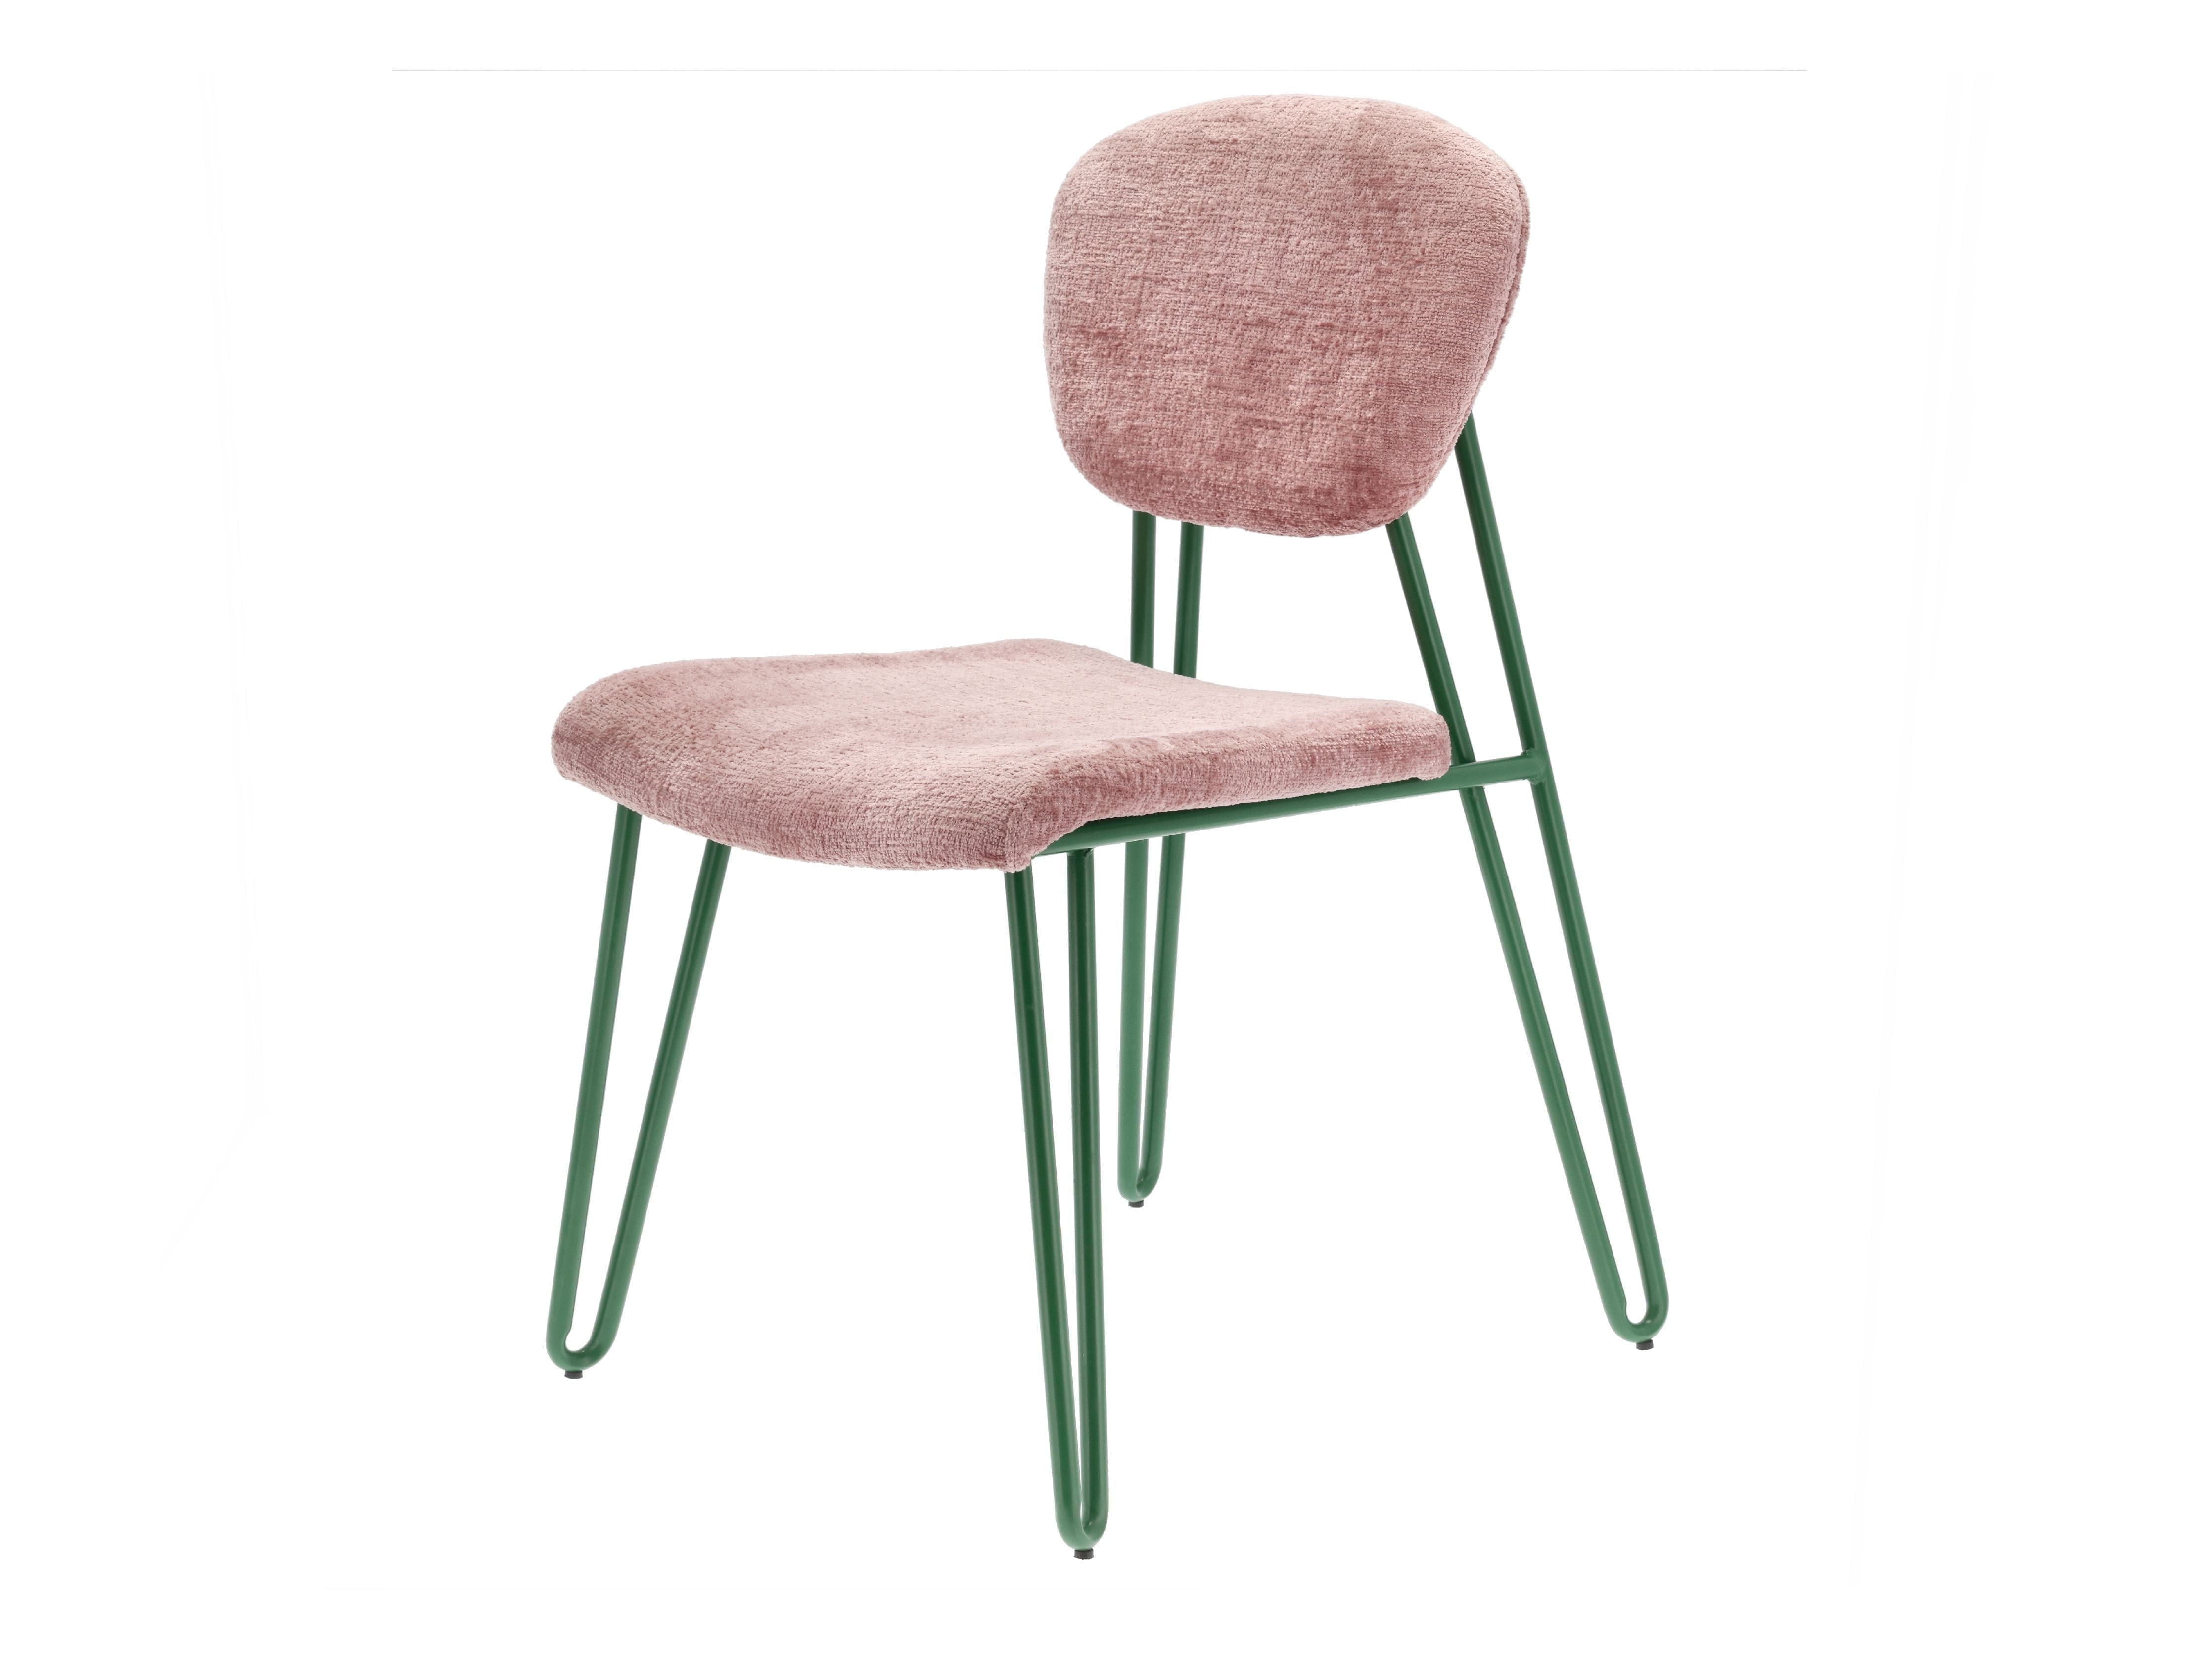 Villa samling stilar stol, grön/rosa